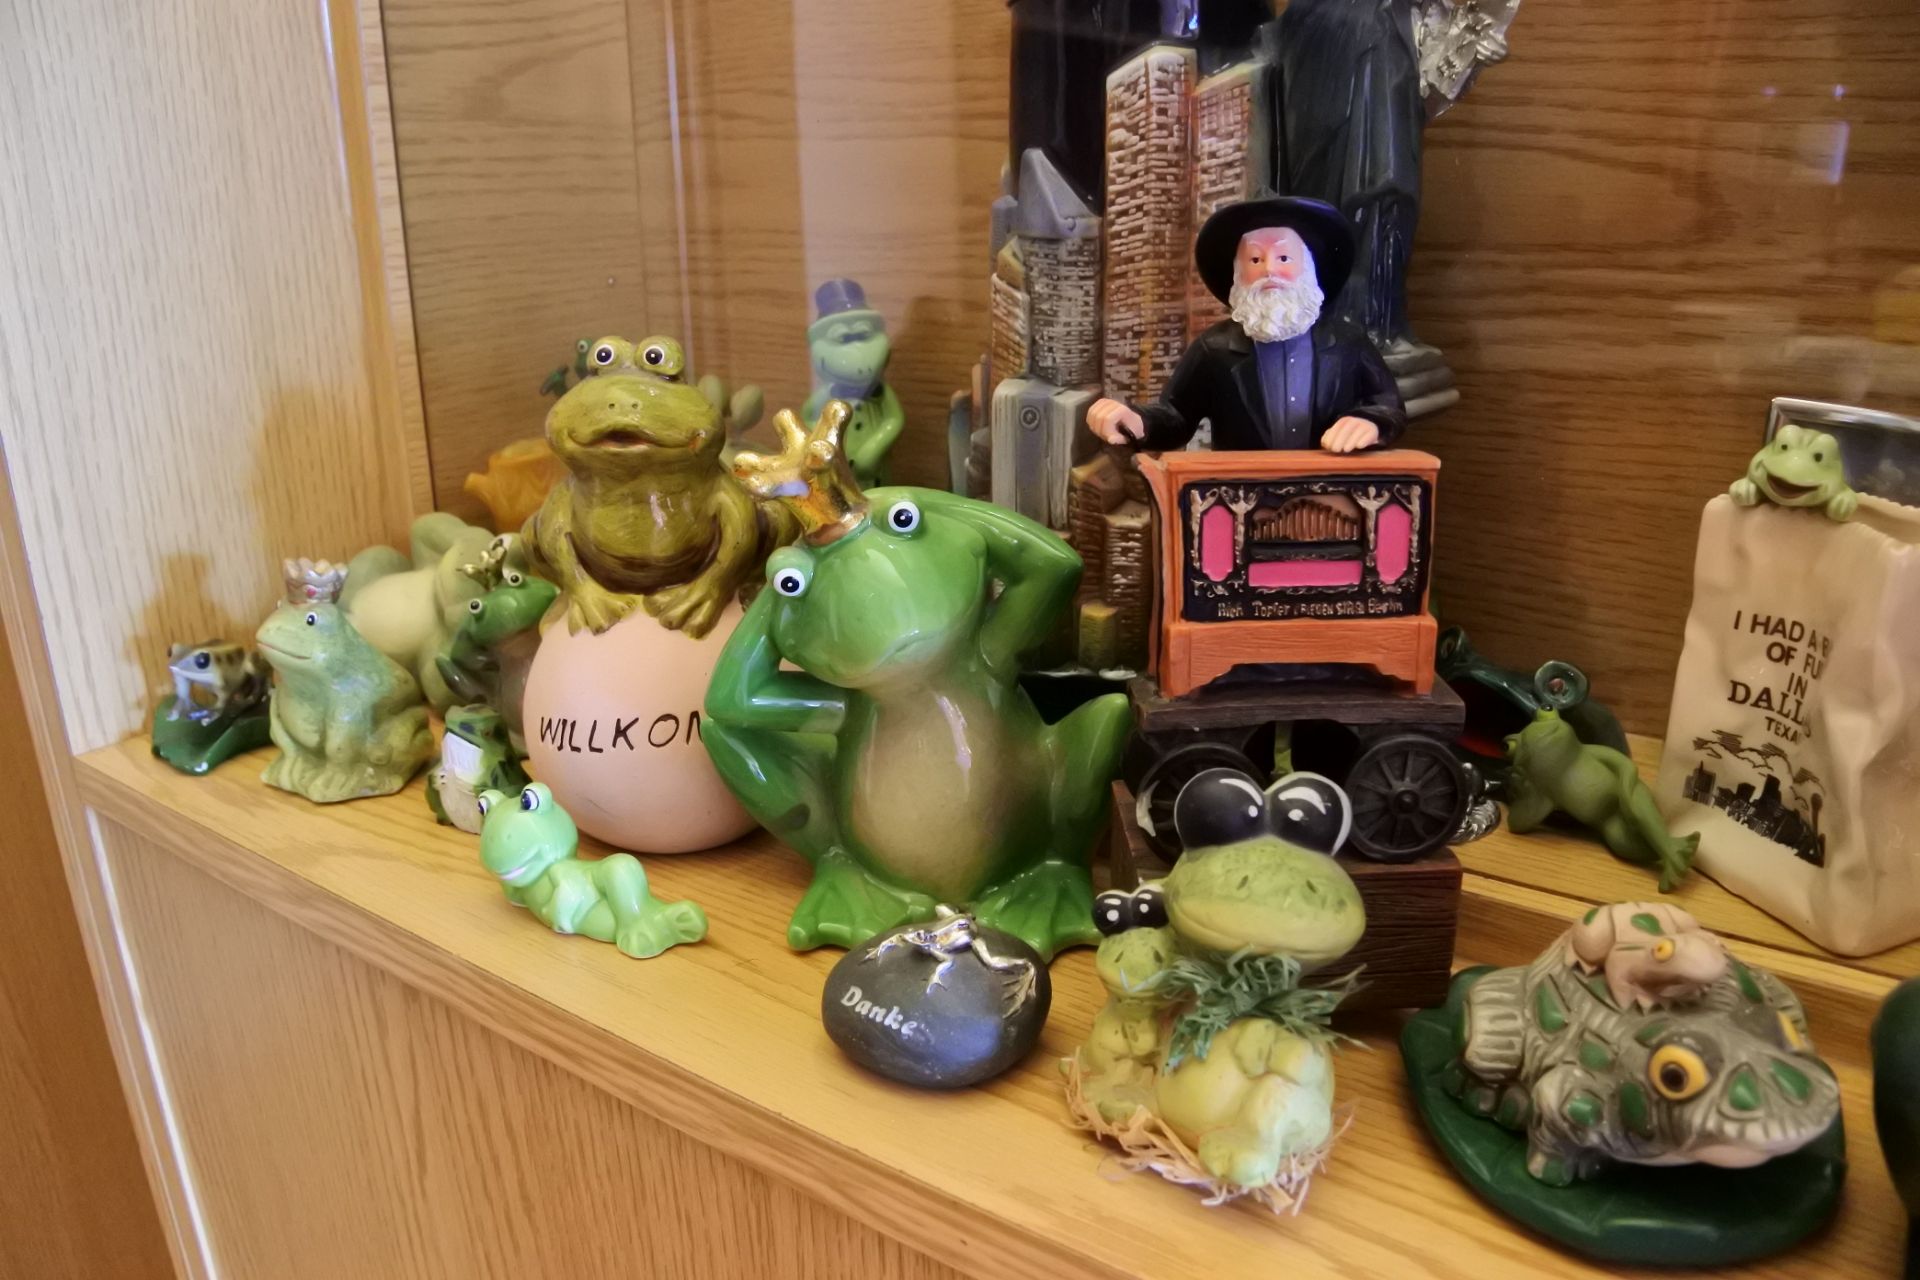 为什么这家旅店的老板收集了上百个青蛙玩具